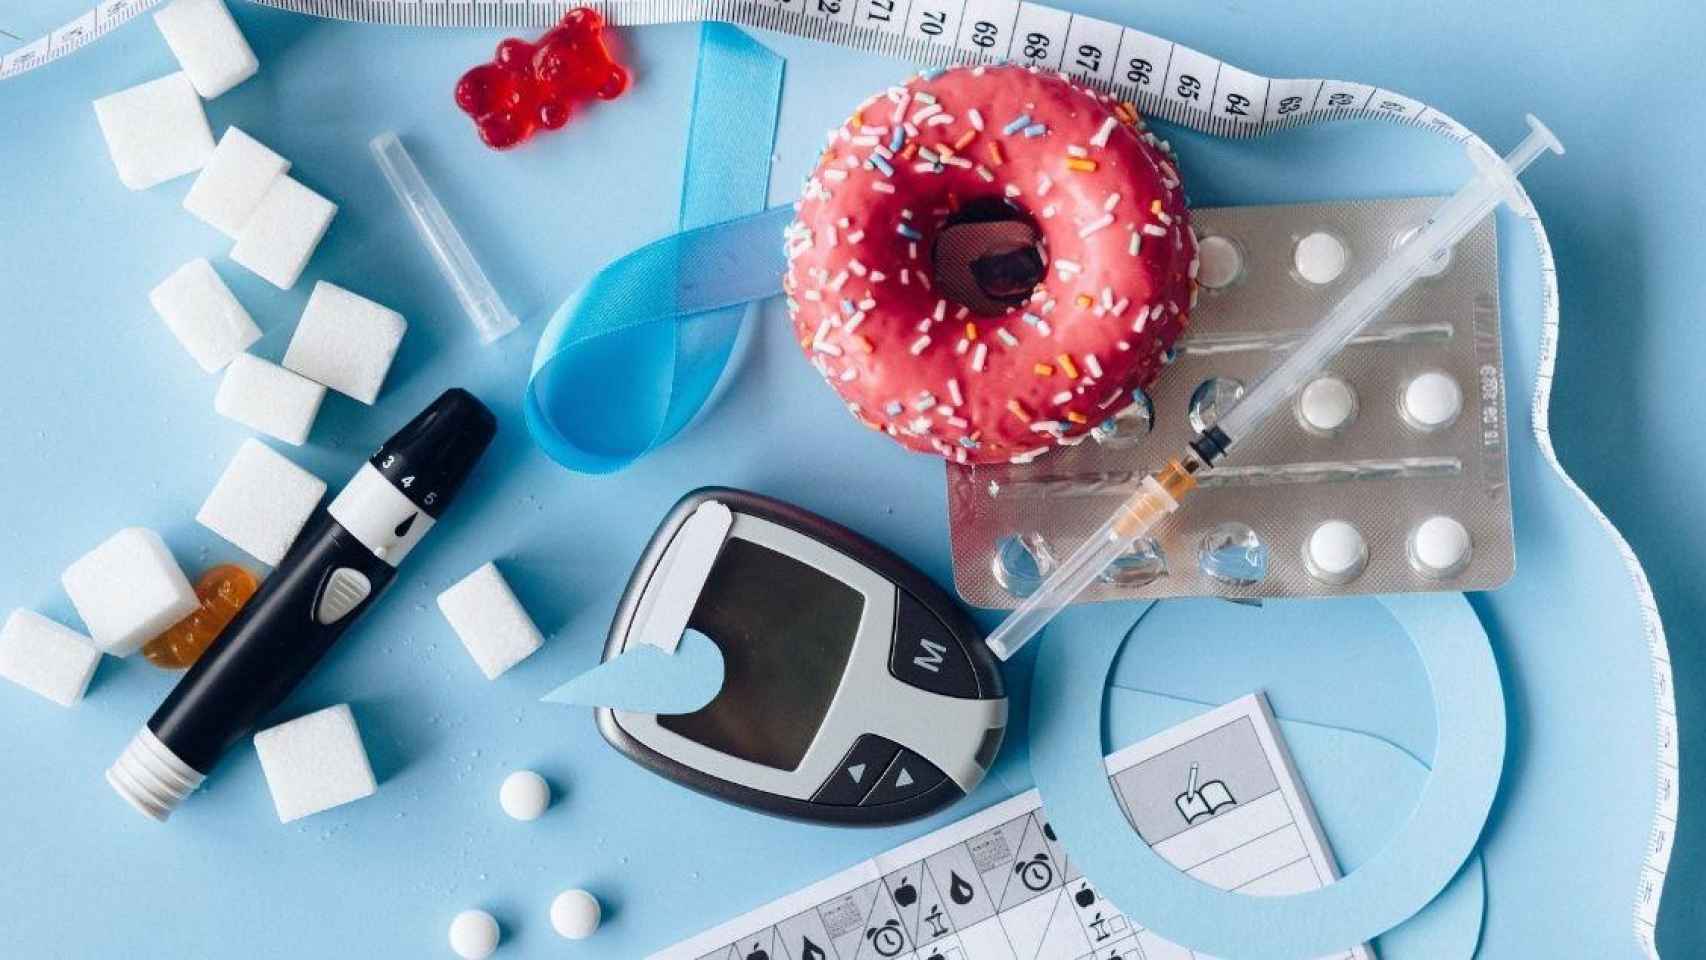 Jeringa de insulina, pinchador para el control glucémico y otros elementos relacionados con la diabetes / PEXELS